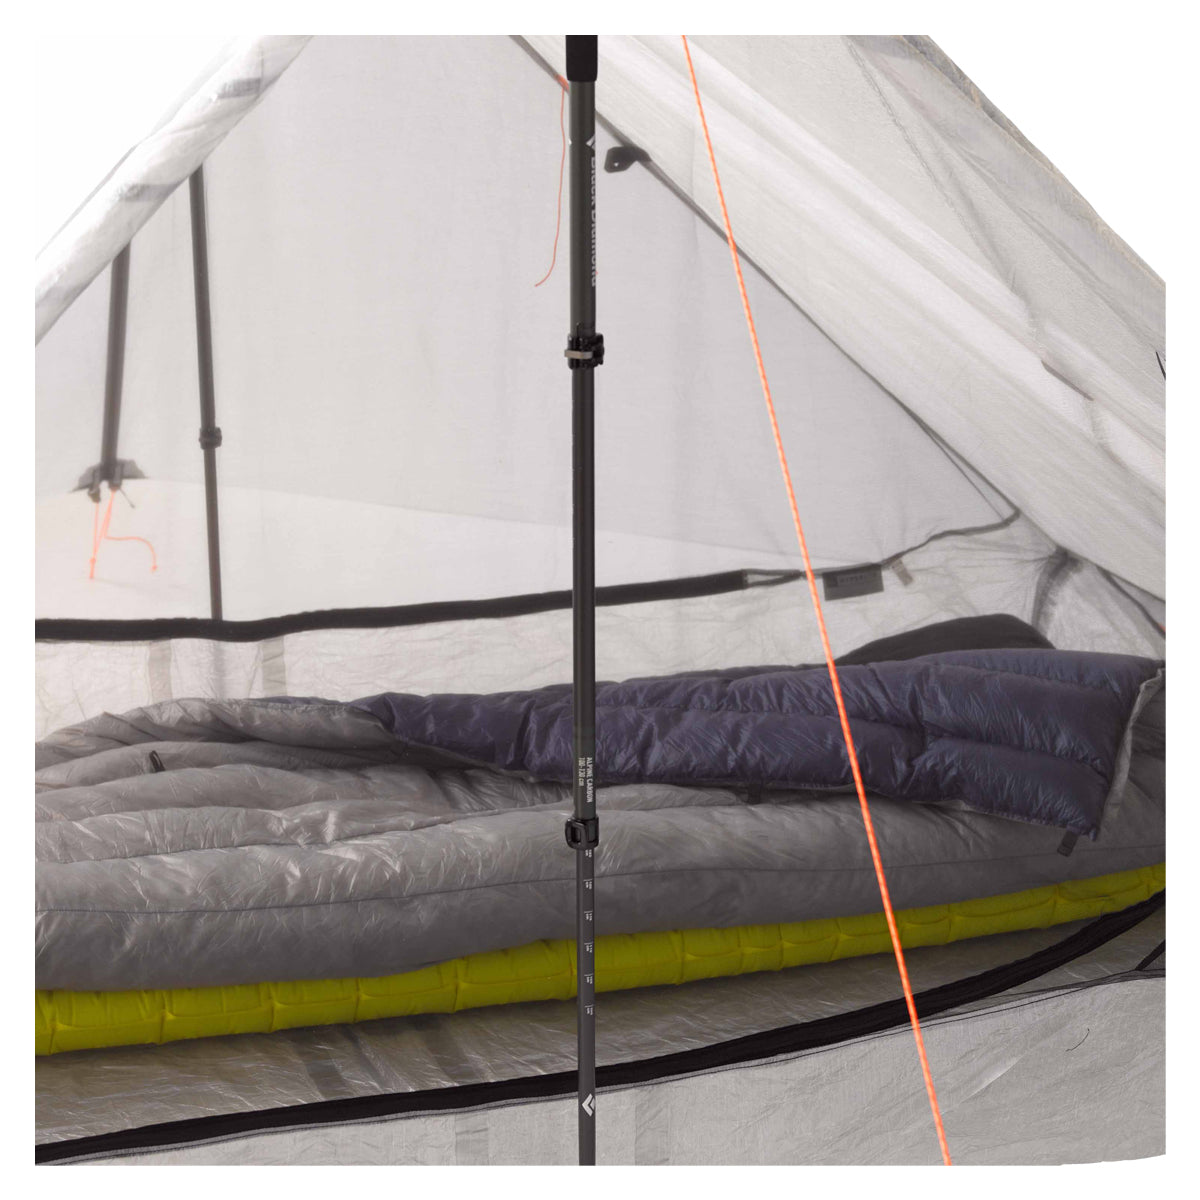 Hyperlite Mountain Gear Unbound 2P Tent in  by GOHUNT | Hyperlite Mountain Gear - GOHUNT Shop